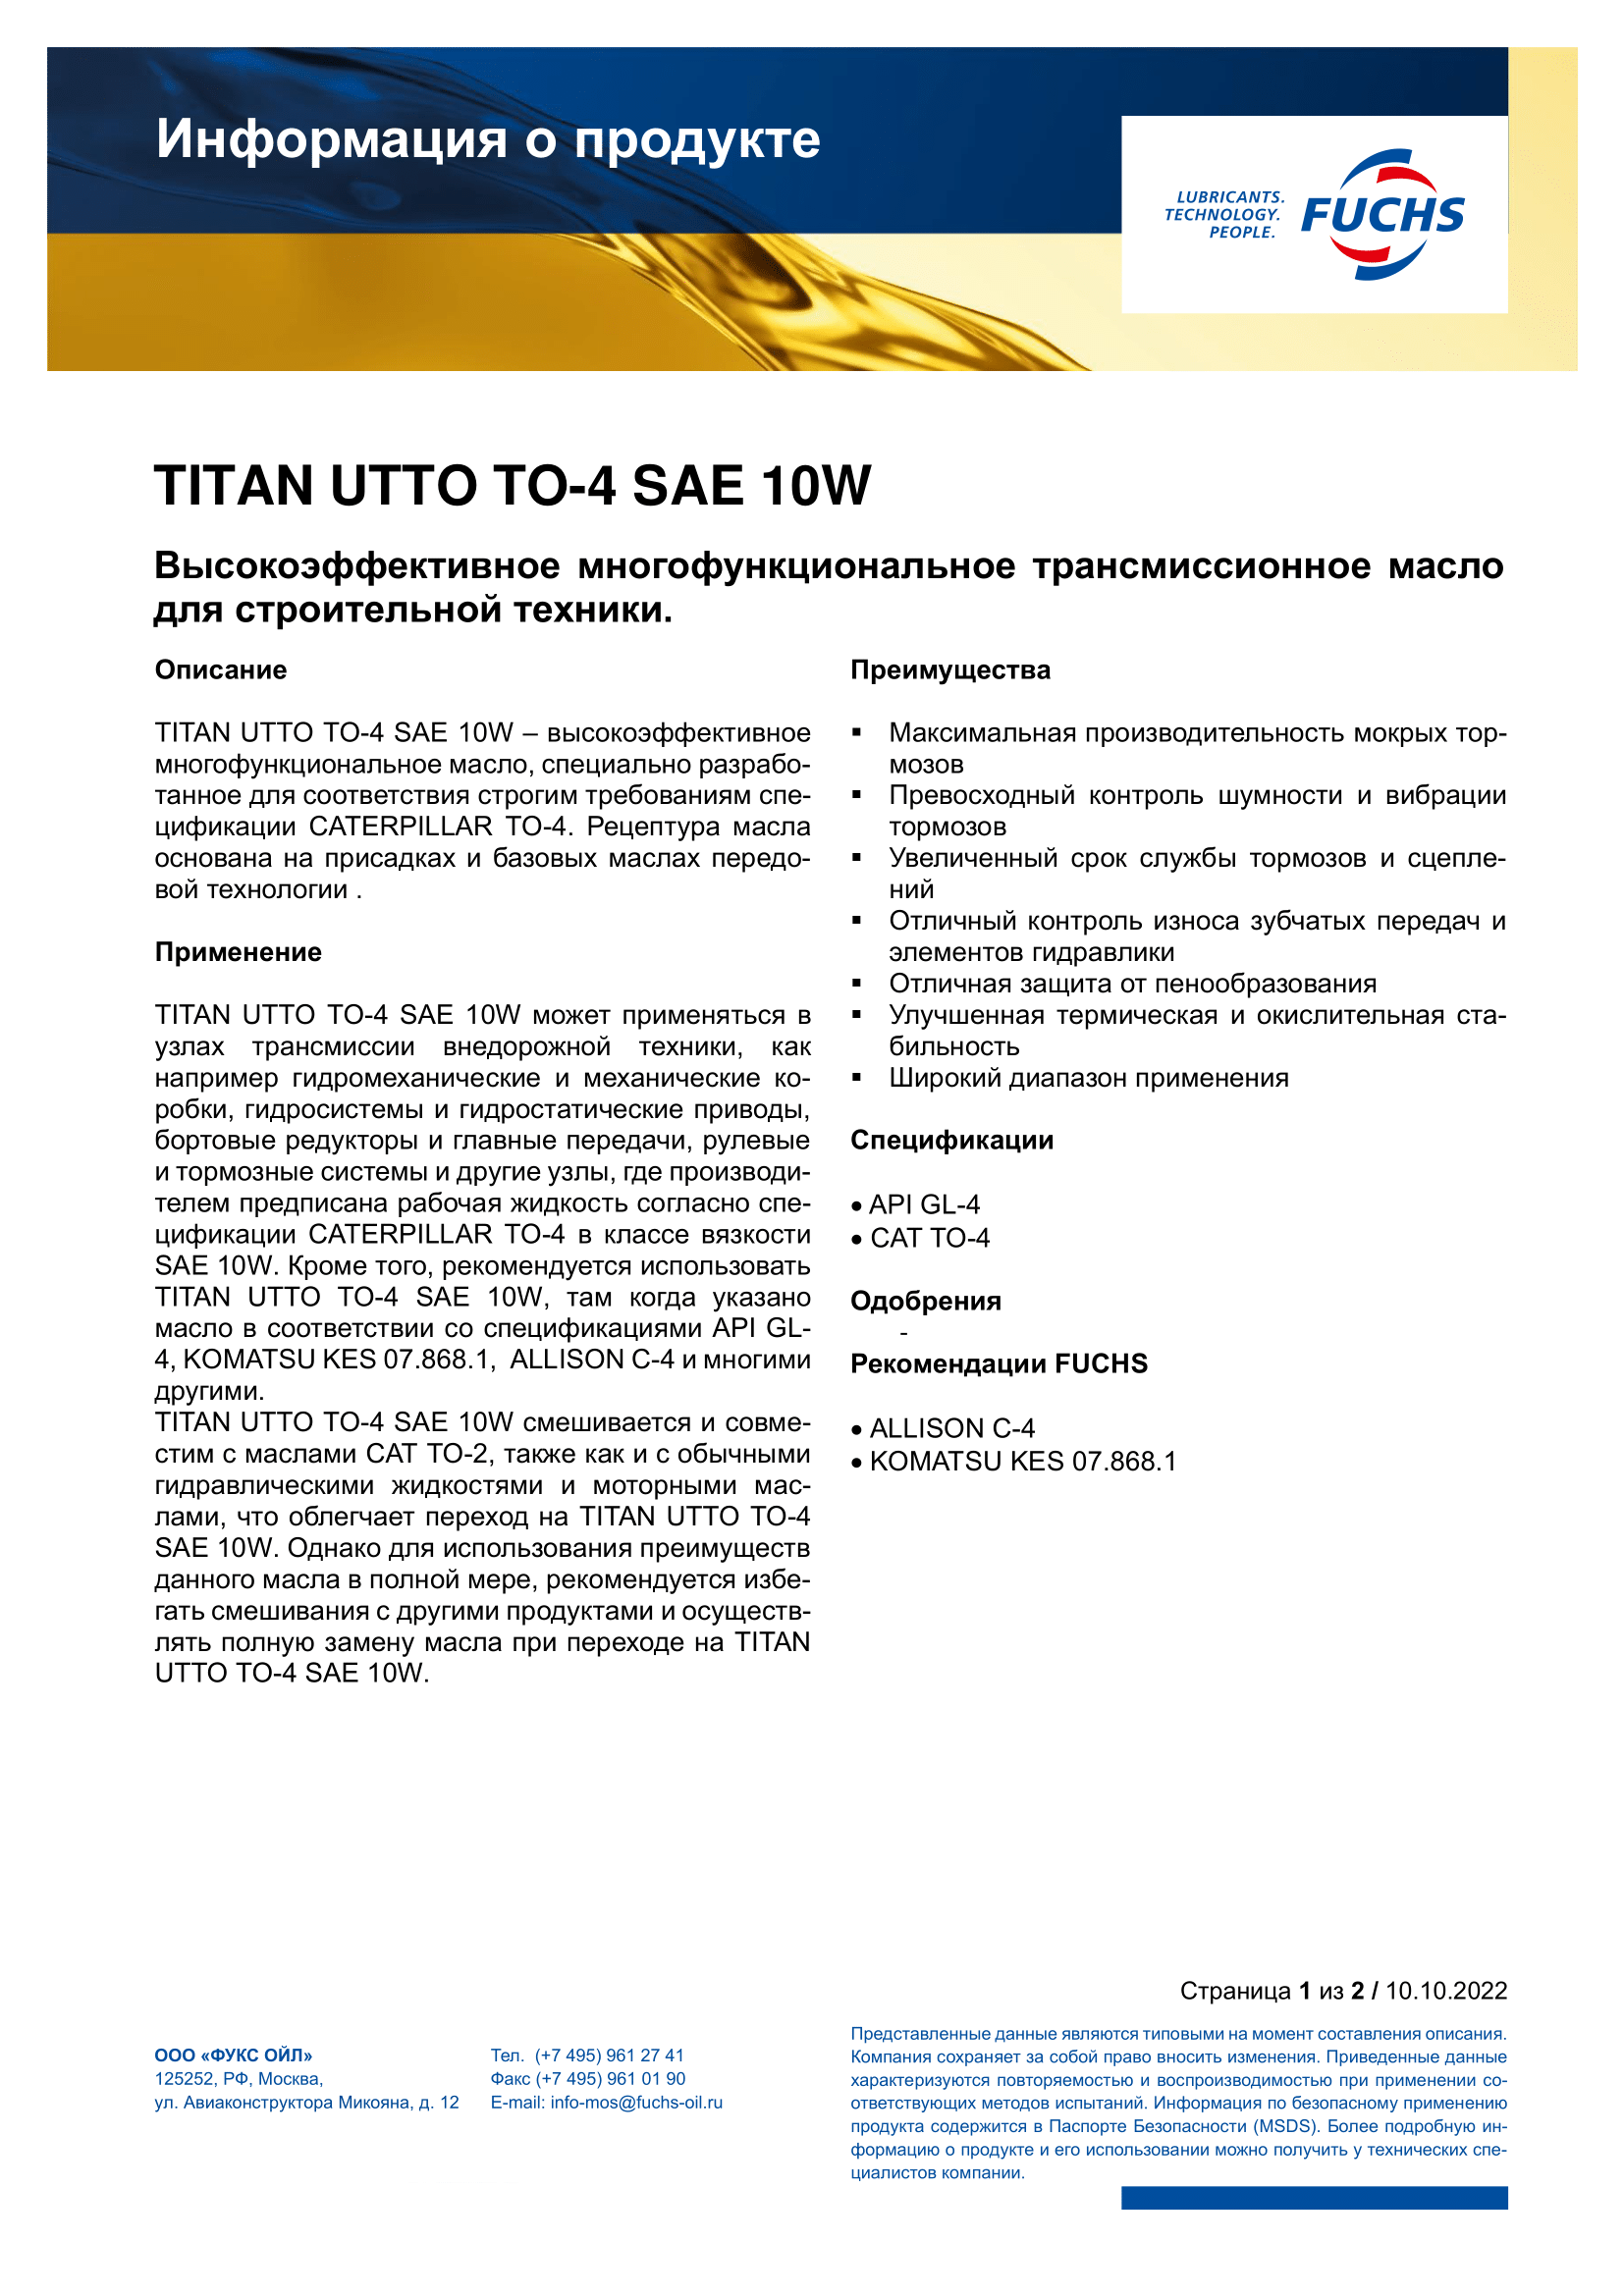 TITAN UTTO TO-4 SAE 10W